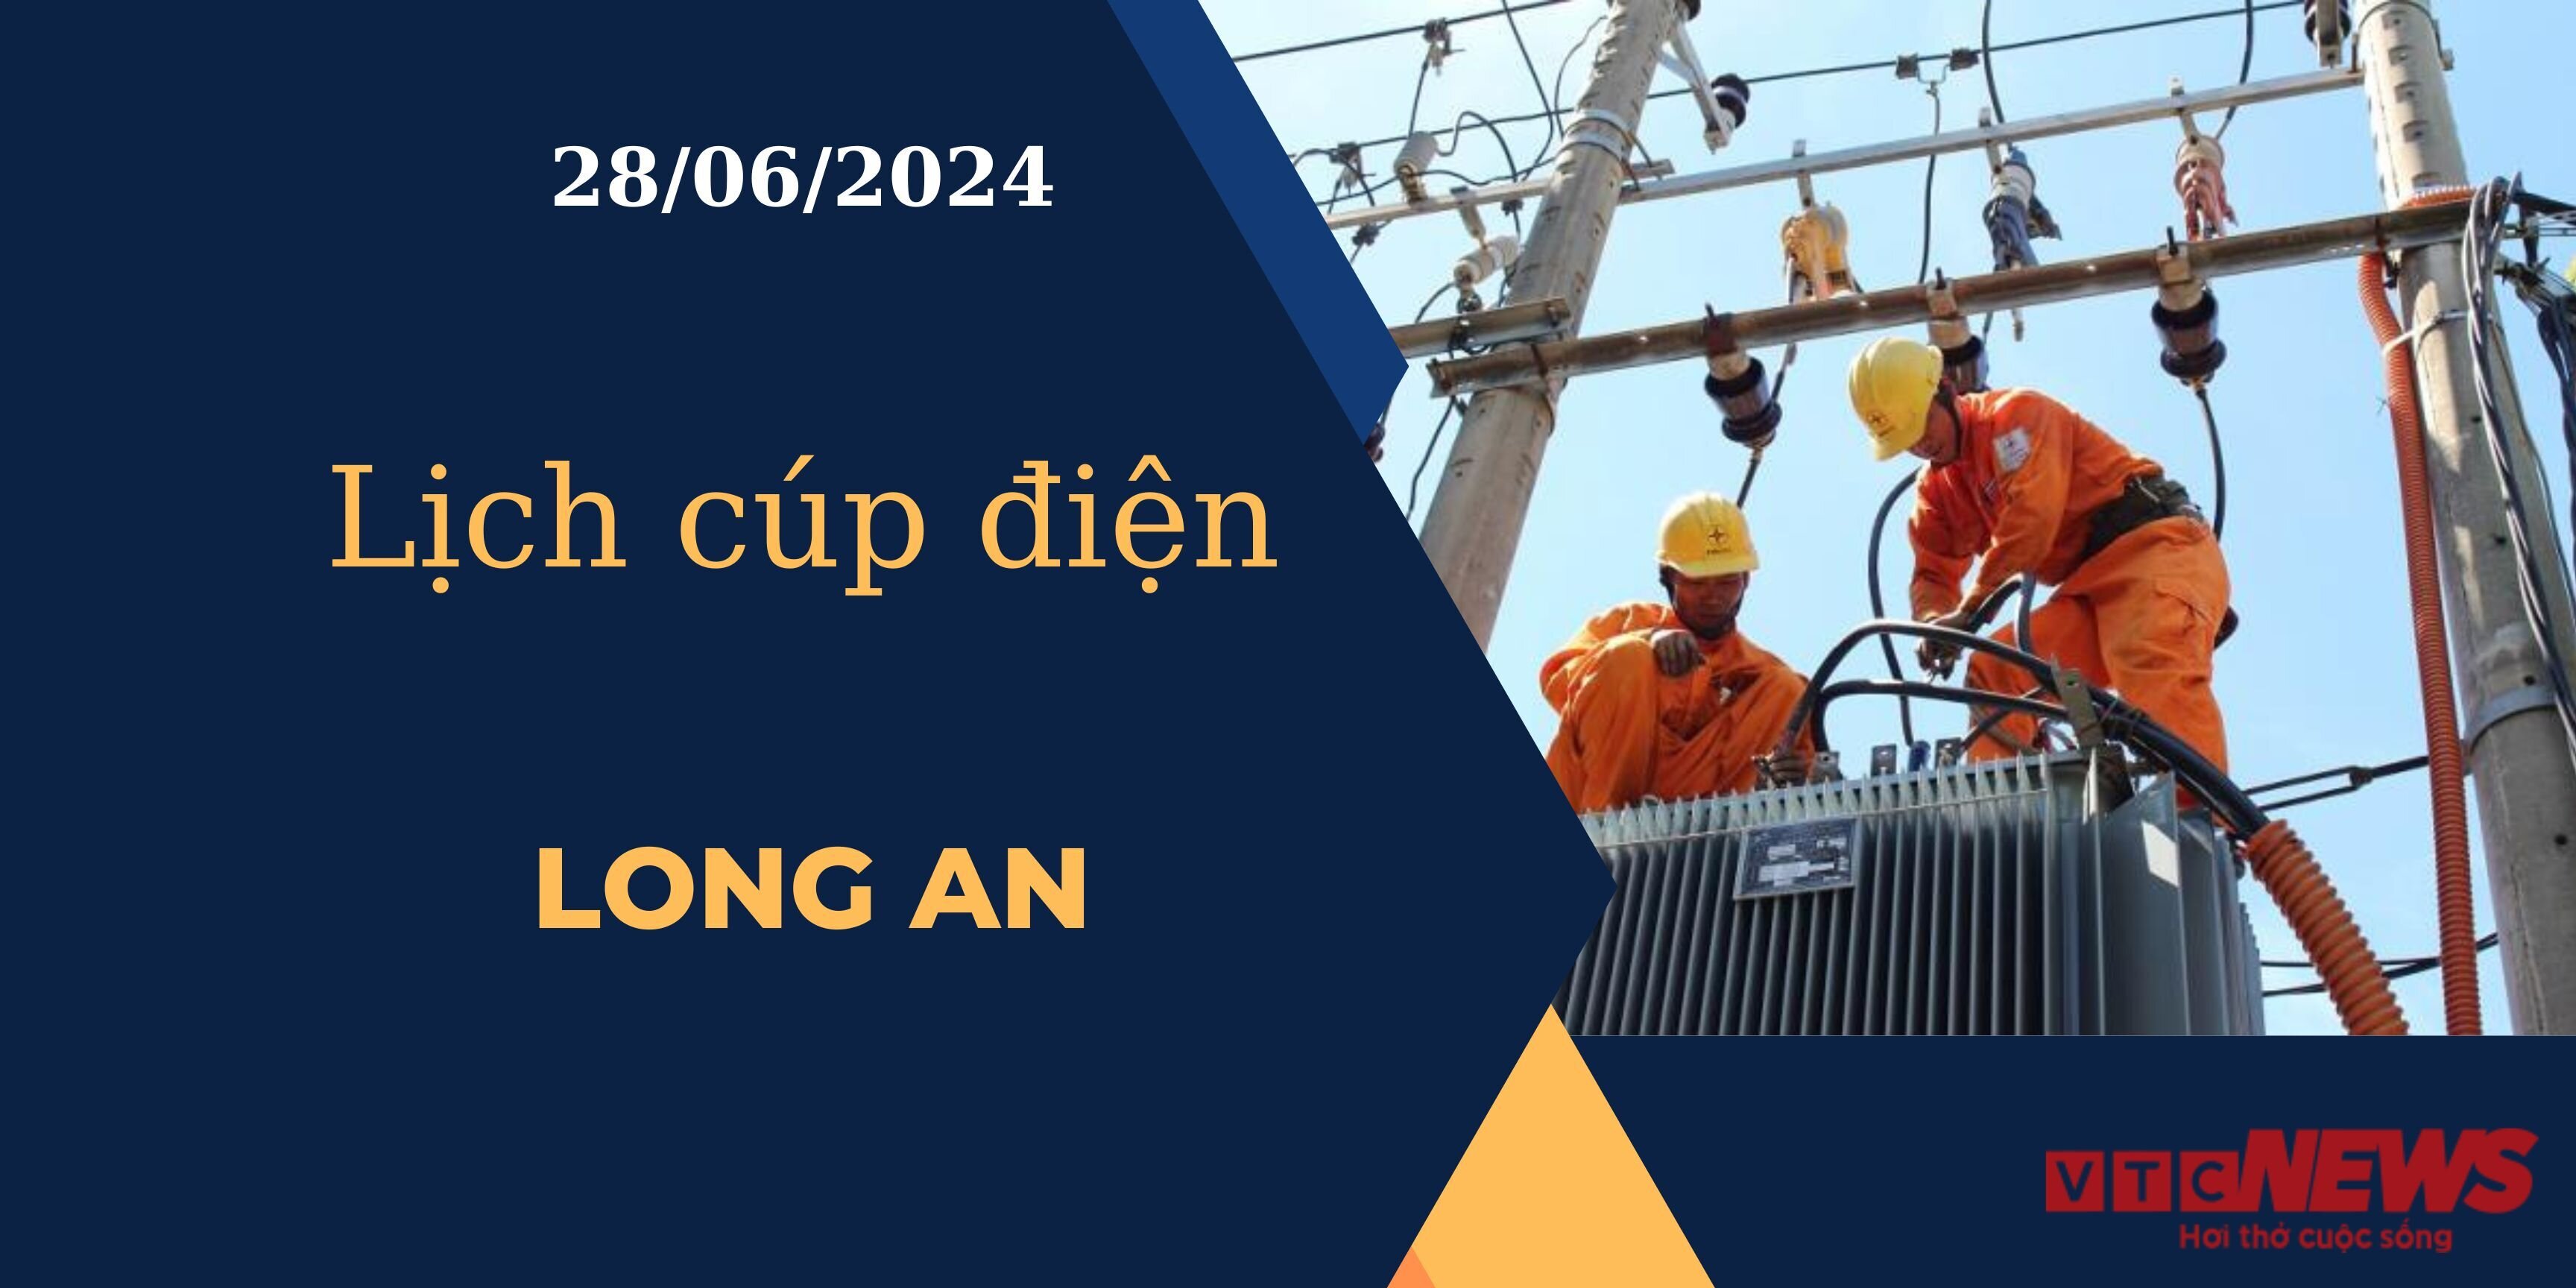 Lịch cúp điện hôm nay ngày 28/06/2024 tại Long An